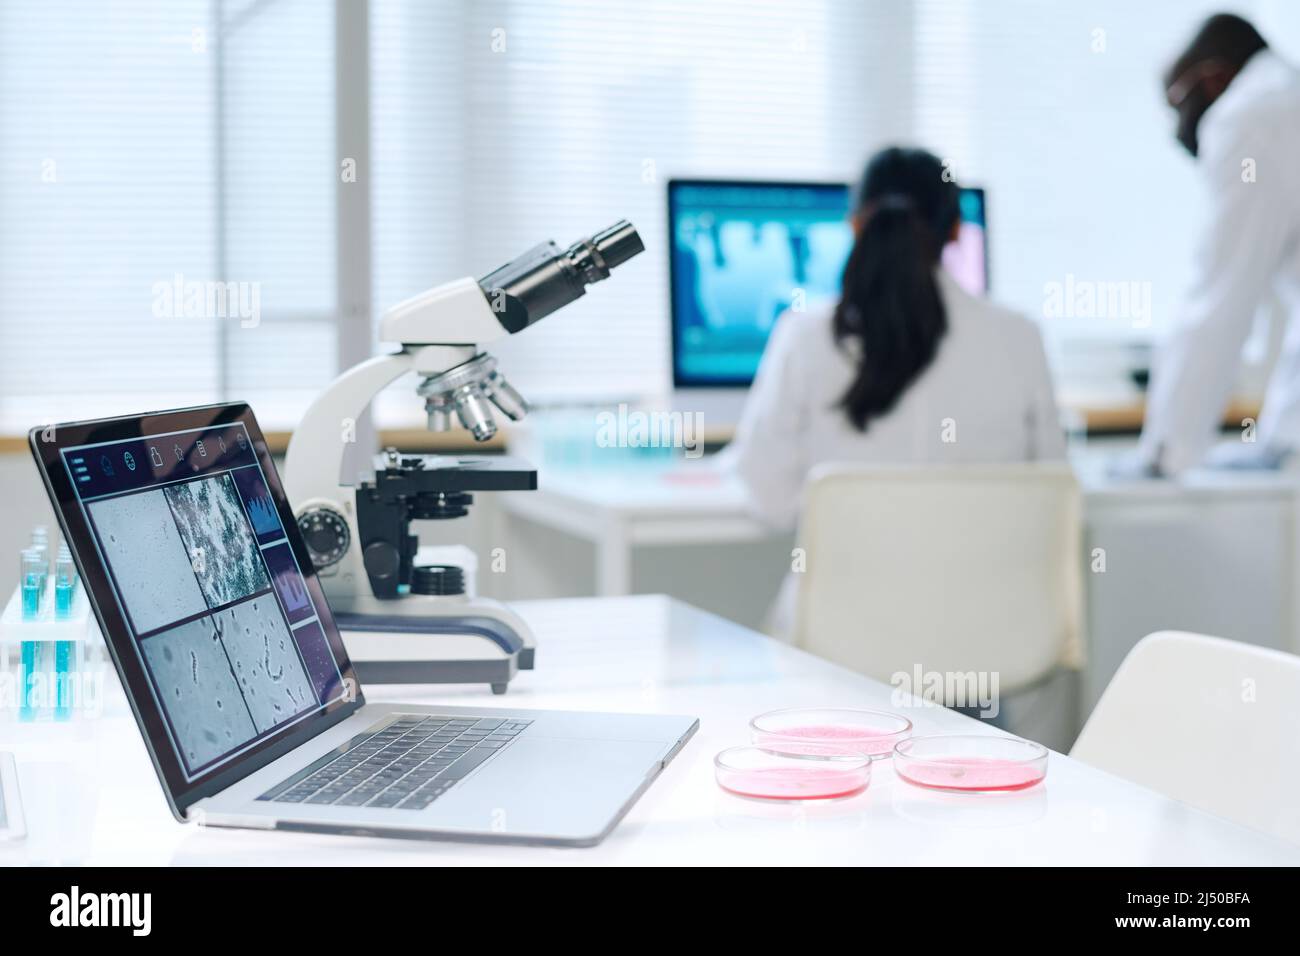 Ordinateur portable avec image scientifique de cellules virales agrandies ou de bactéries à l'écran debout sur le lieu de travail du scientifique contre deux travailleurs de laboratoire Banque D'Images